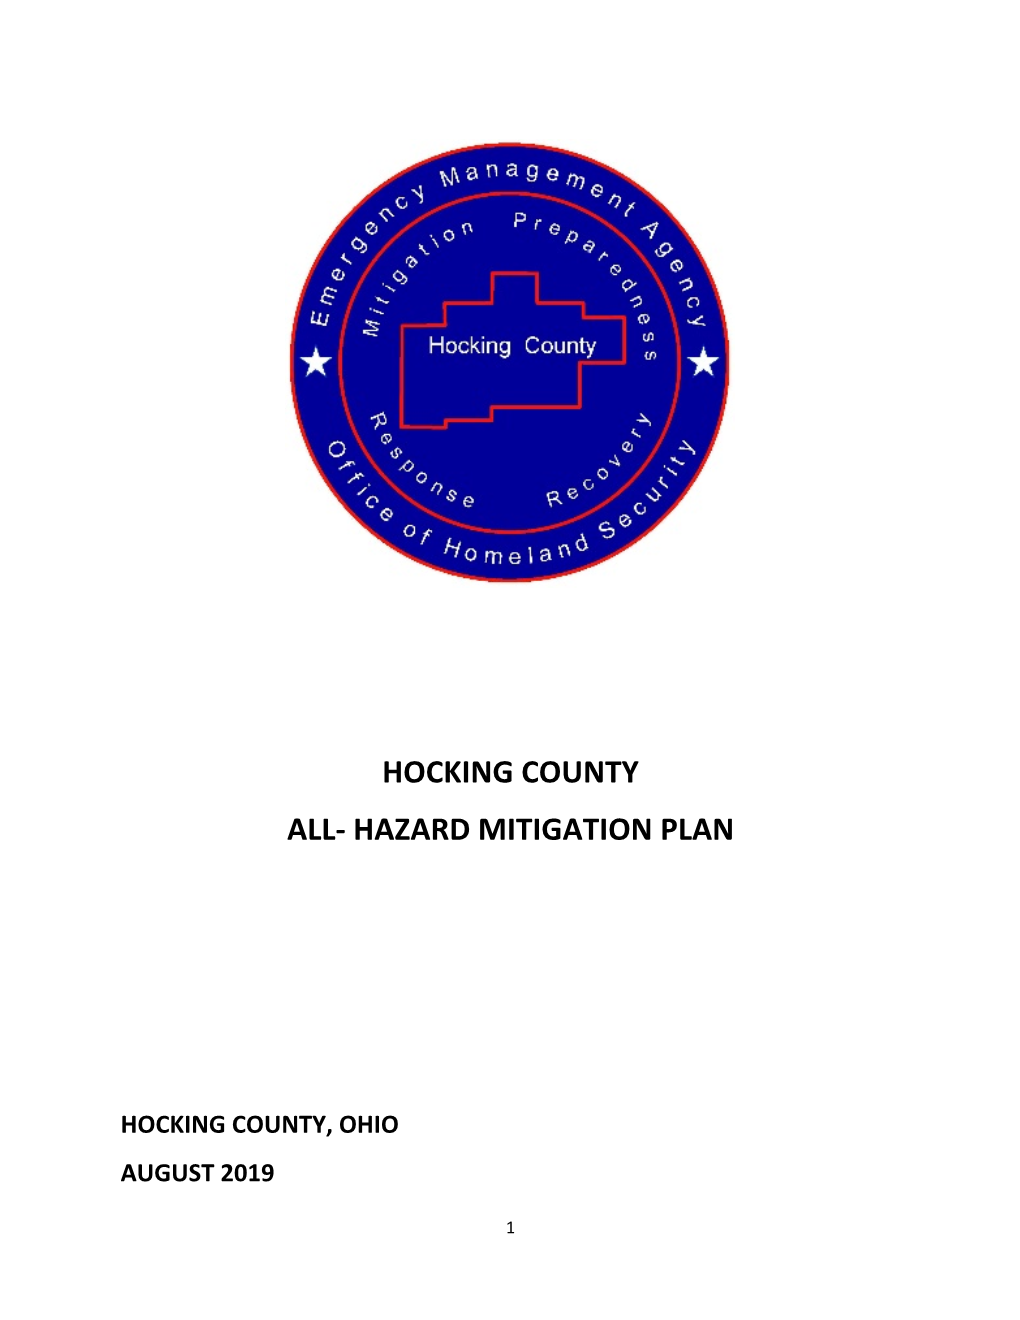 2019 Hocking County All-Hazard Mitigation Plan